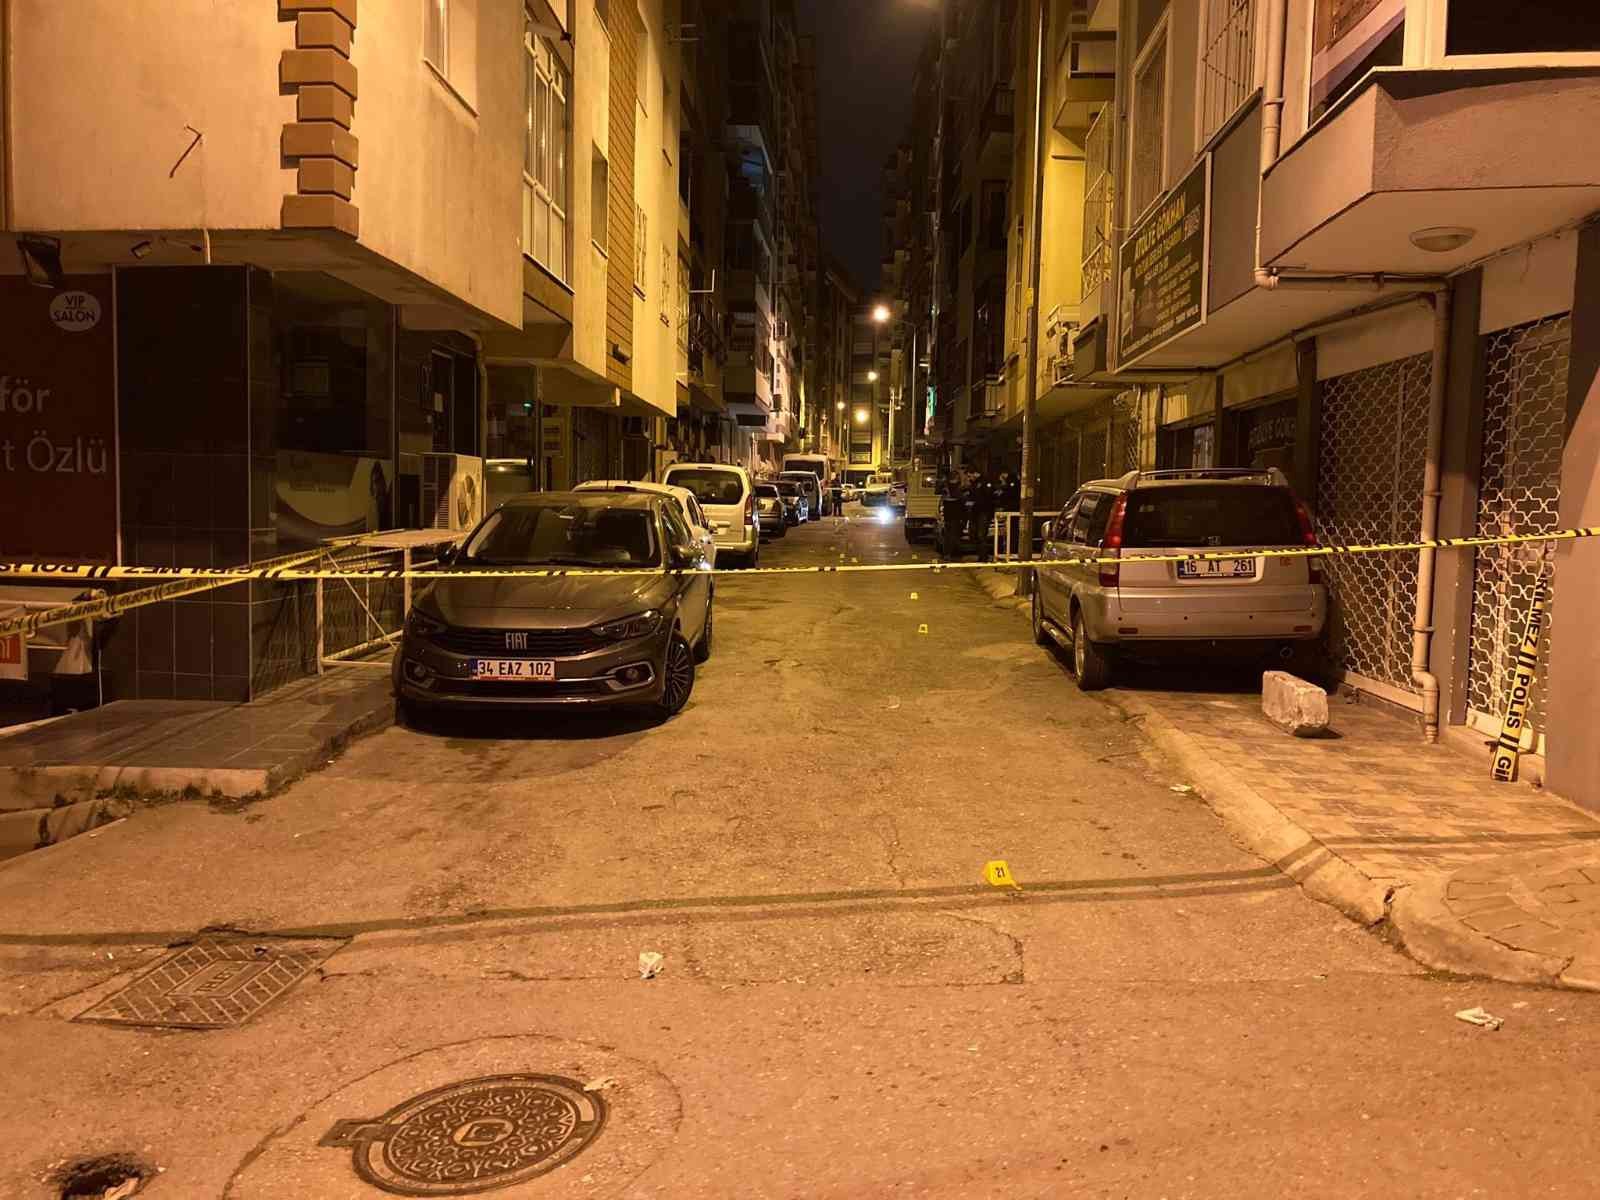 İzmir’de saldırganlar dehşet saçtı: 1 polis ve 7 ESHOT personeli bıçaklandı #izmir